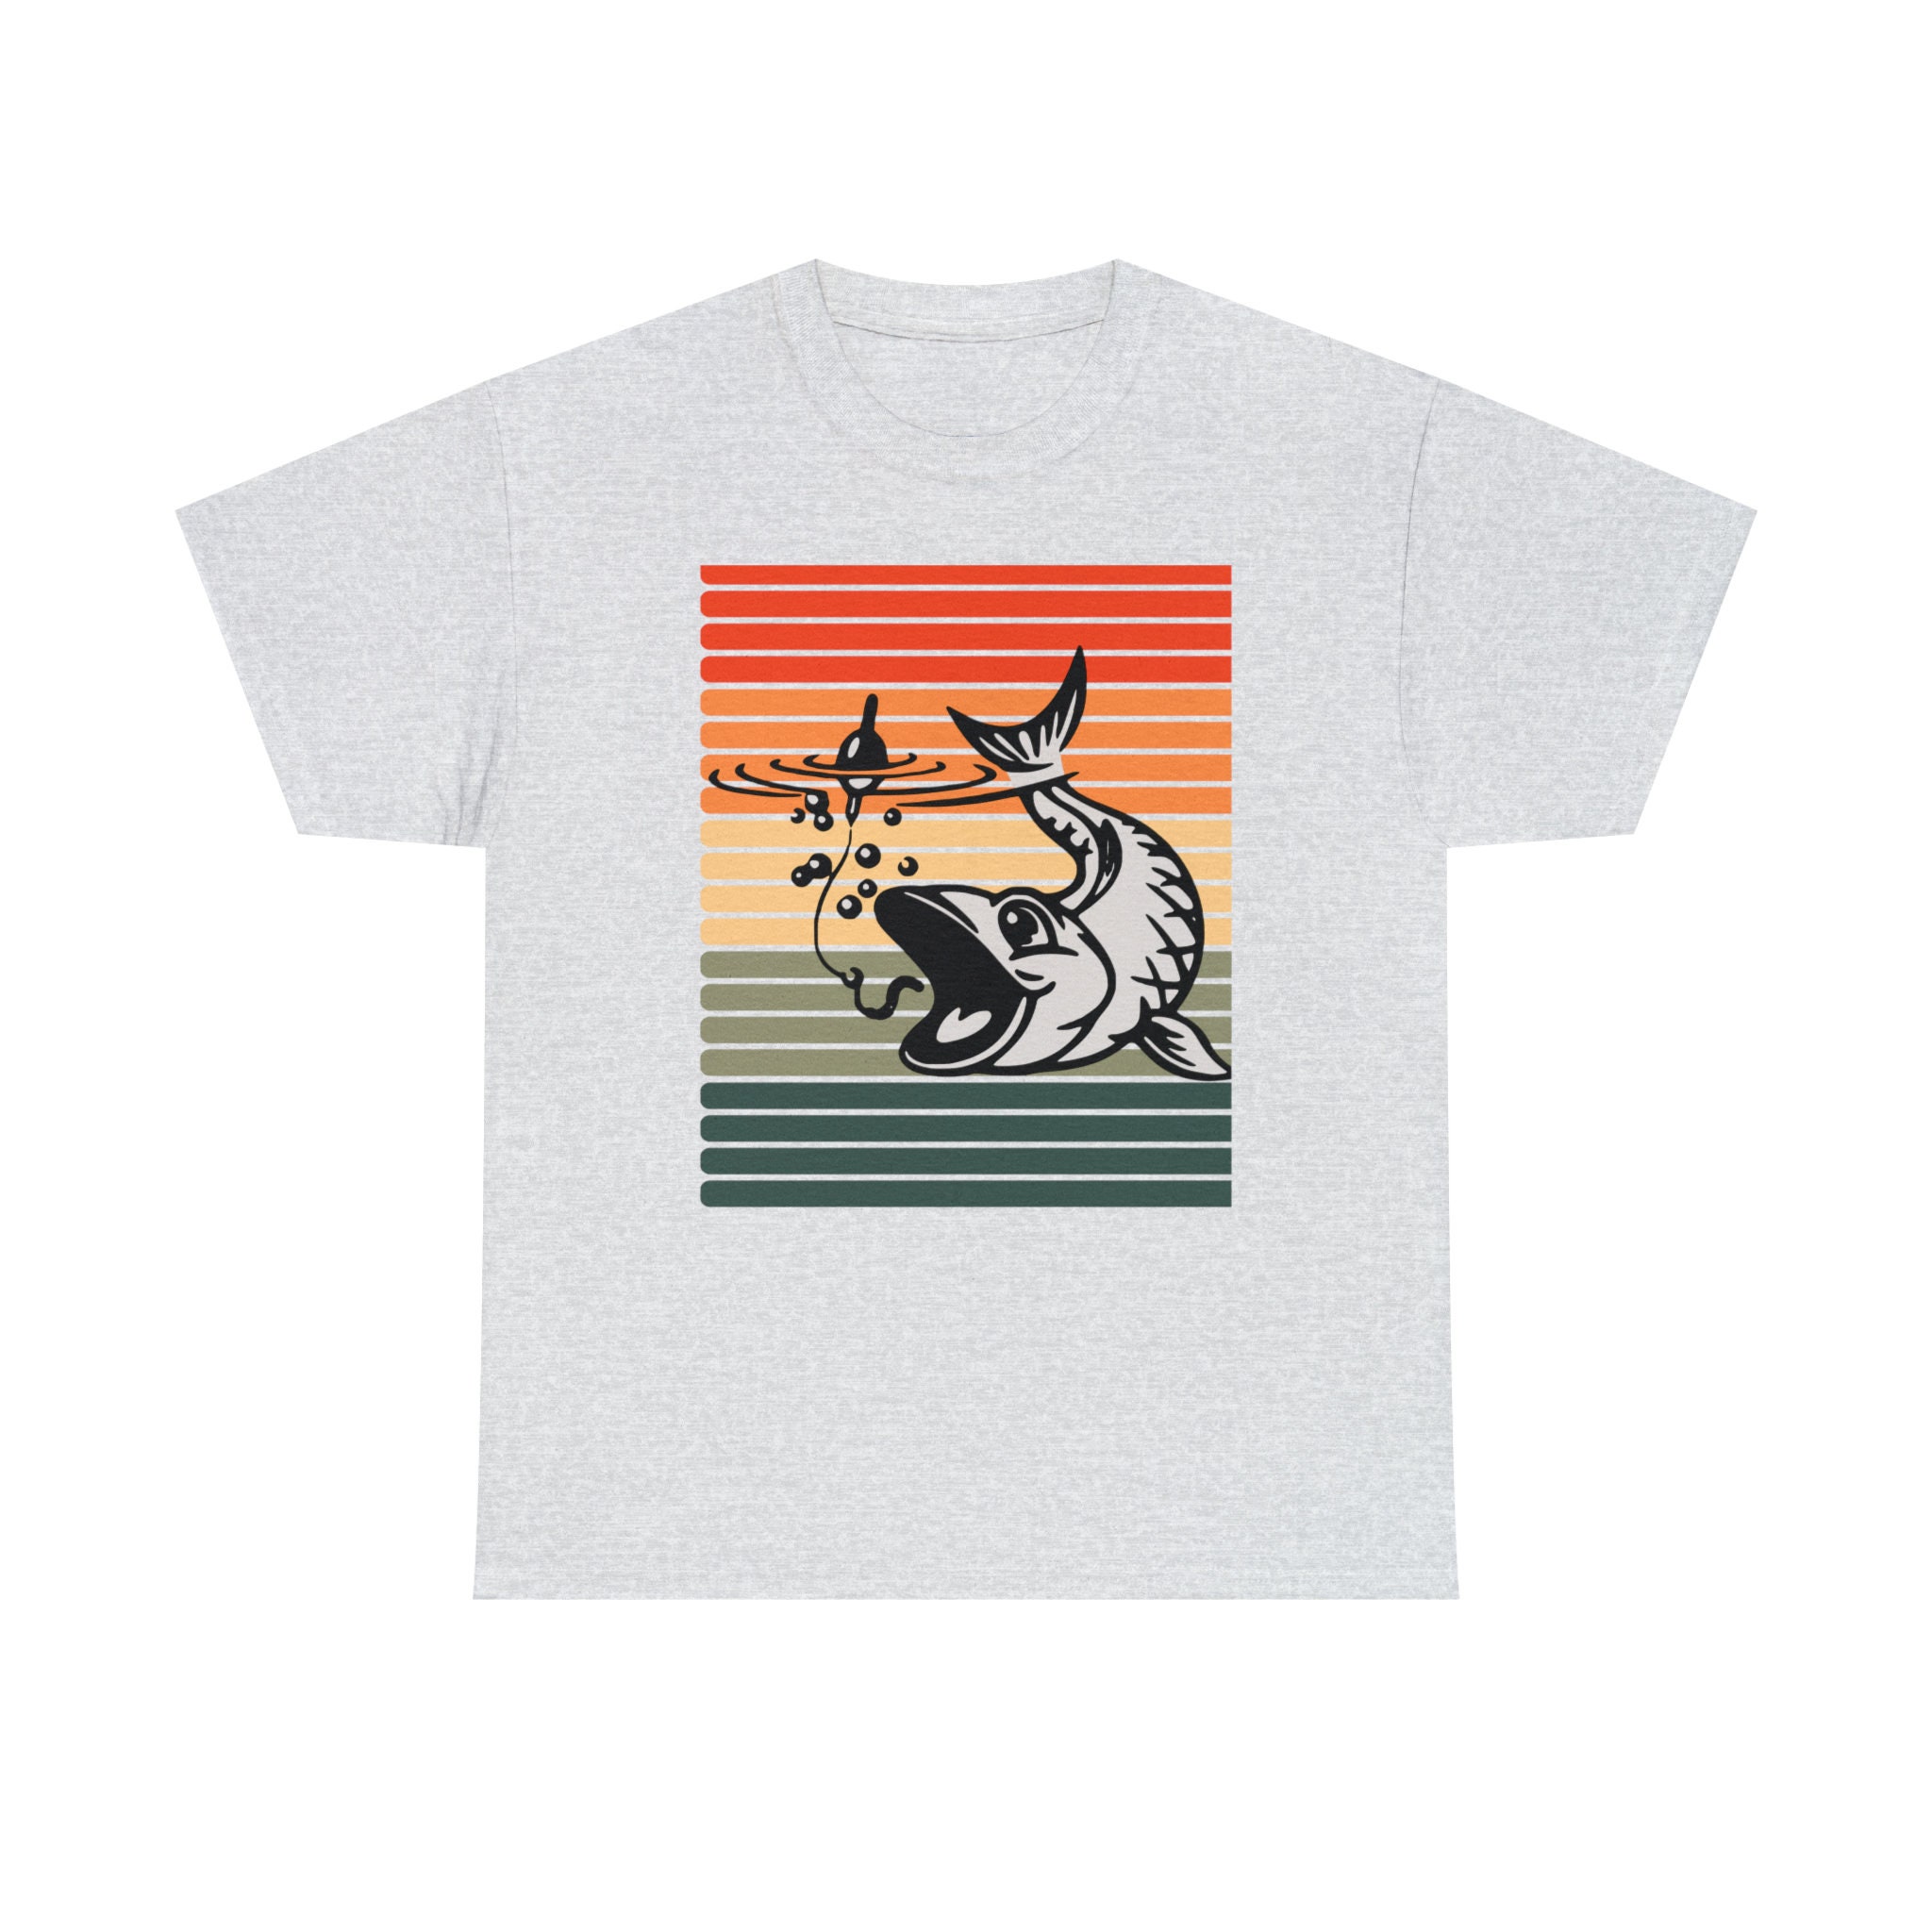 Sunset Fishing Shirts for Men & Women, Fishers Shirt, Fishing Shirts, Fishing Lovers